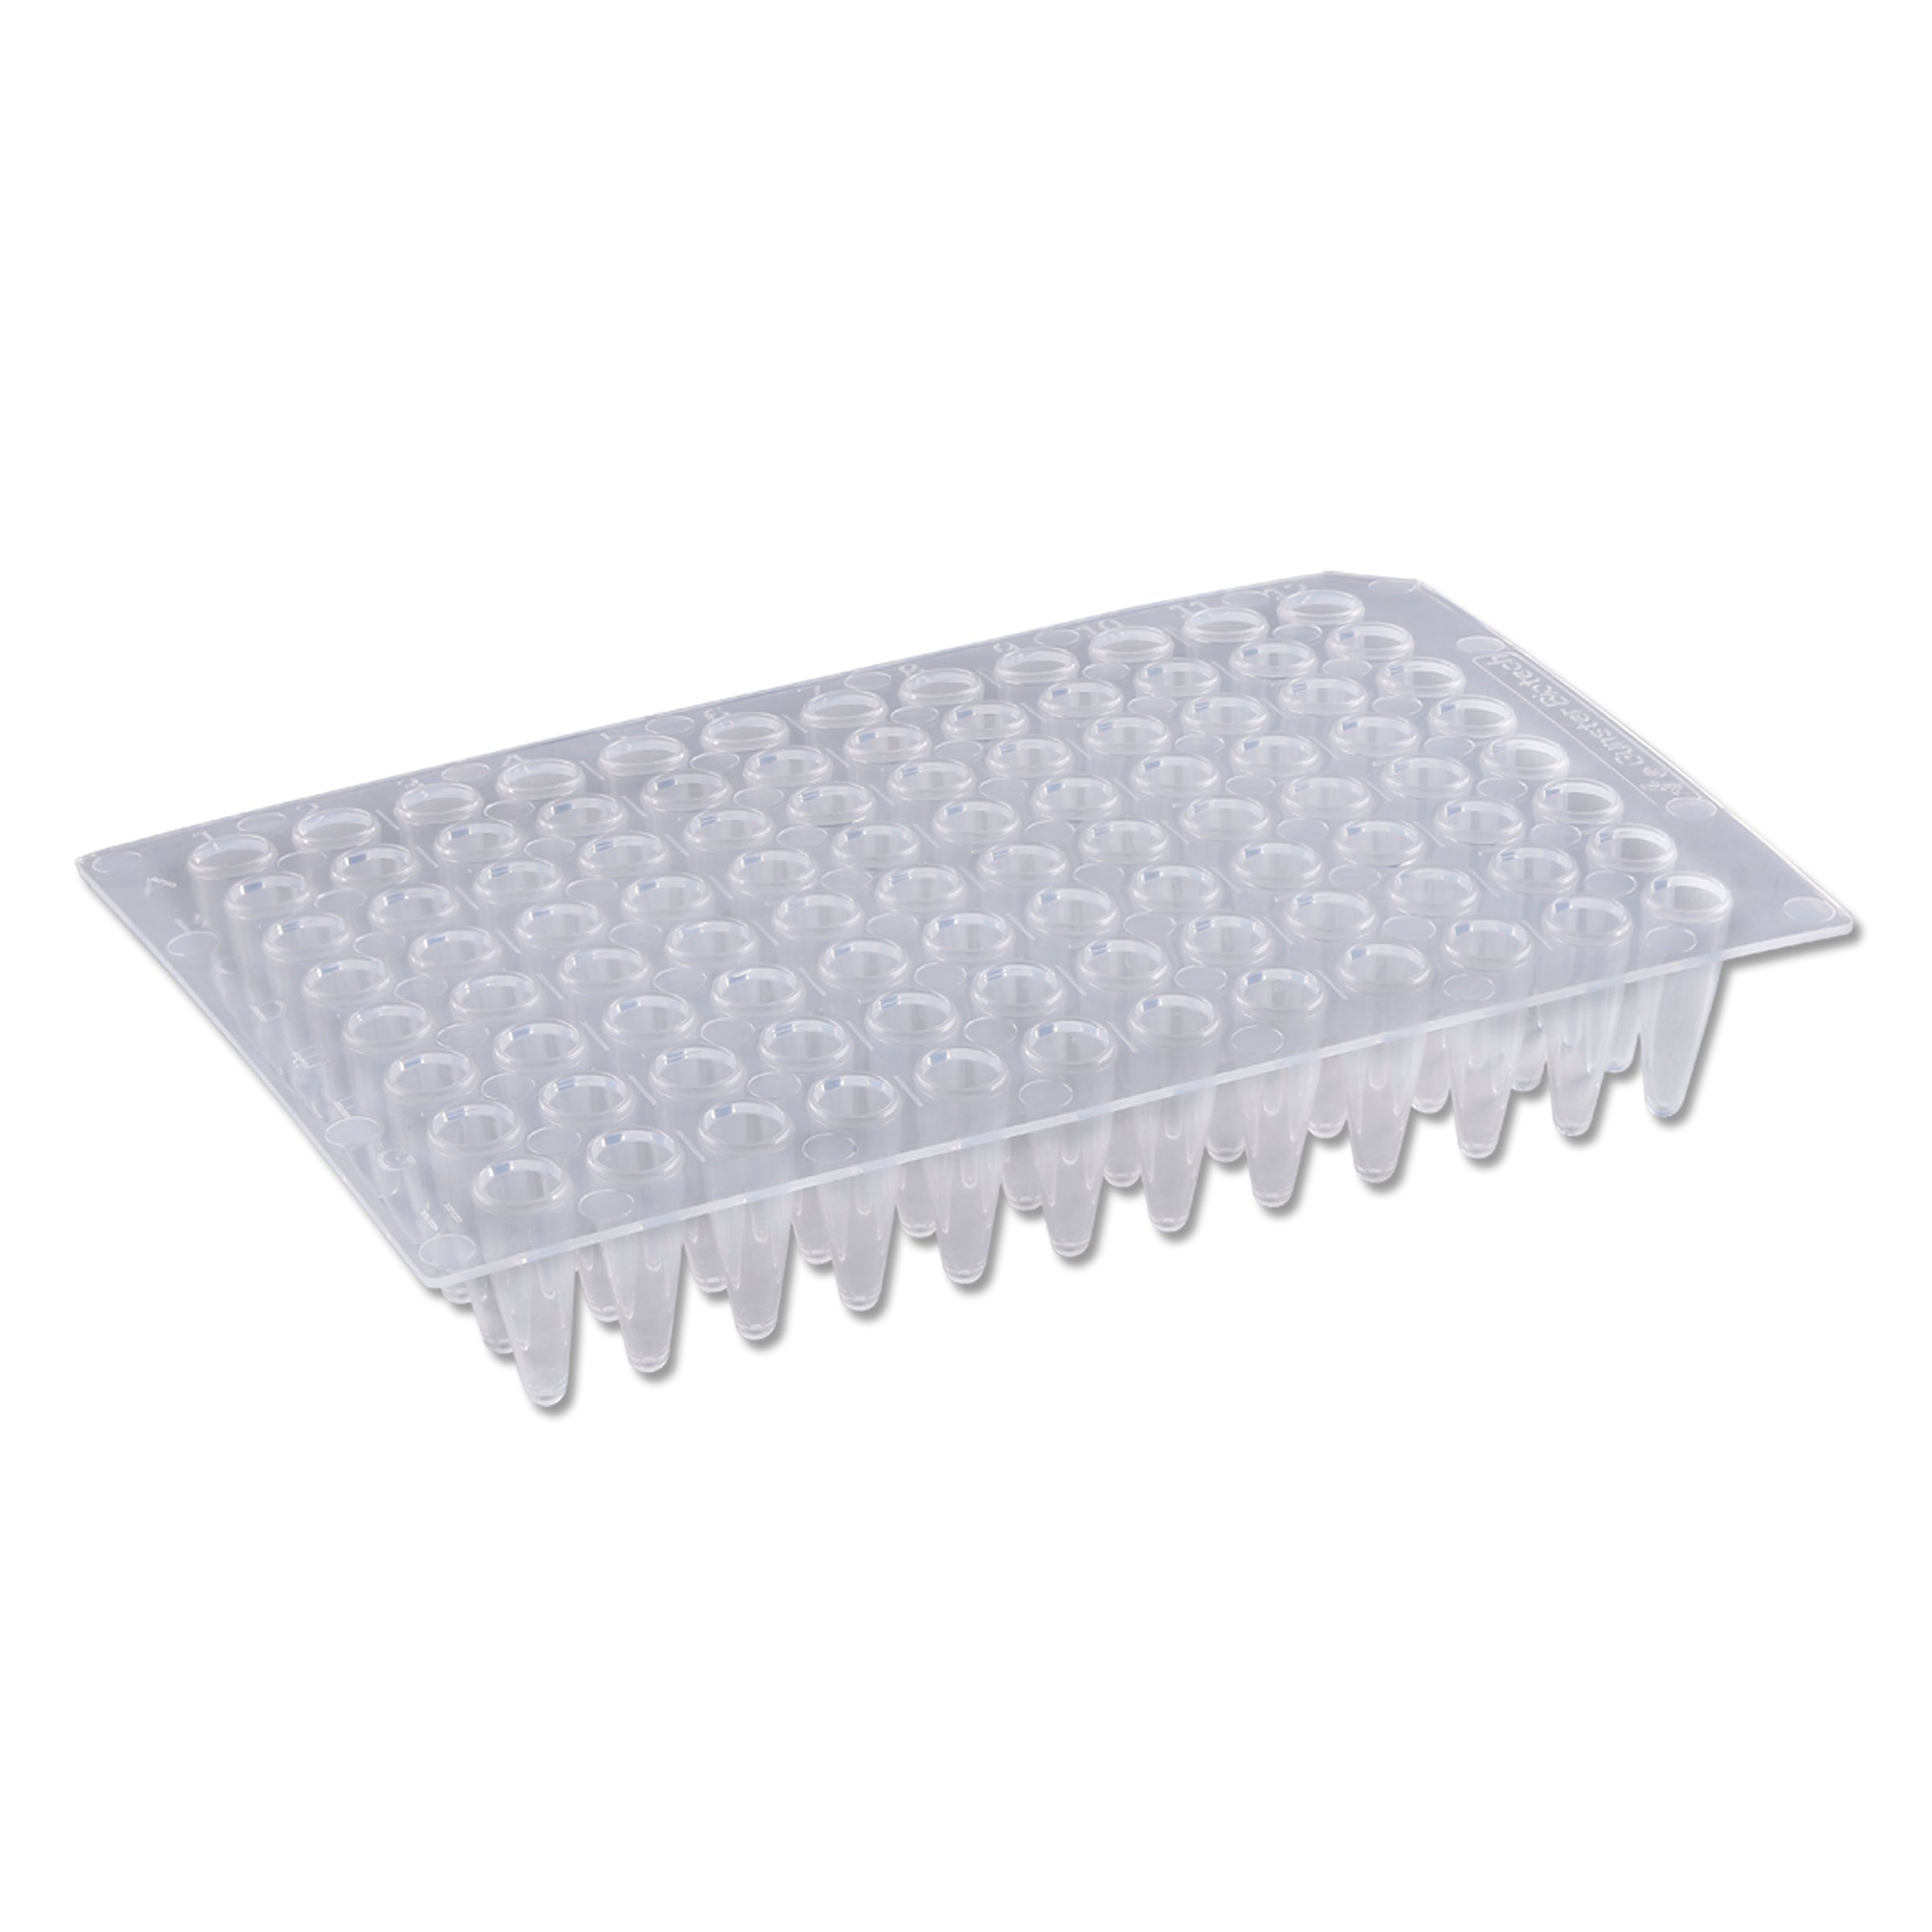 MTC Bio P9602-N PCR Plates, Standard 96 well x 0.2ml, non-skirted, 50/pk